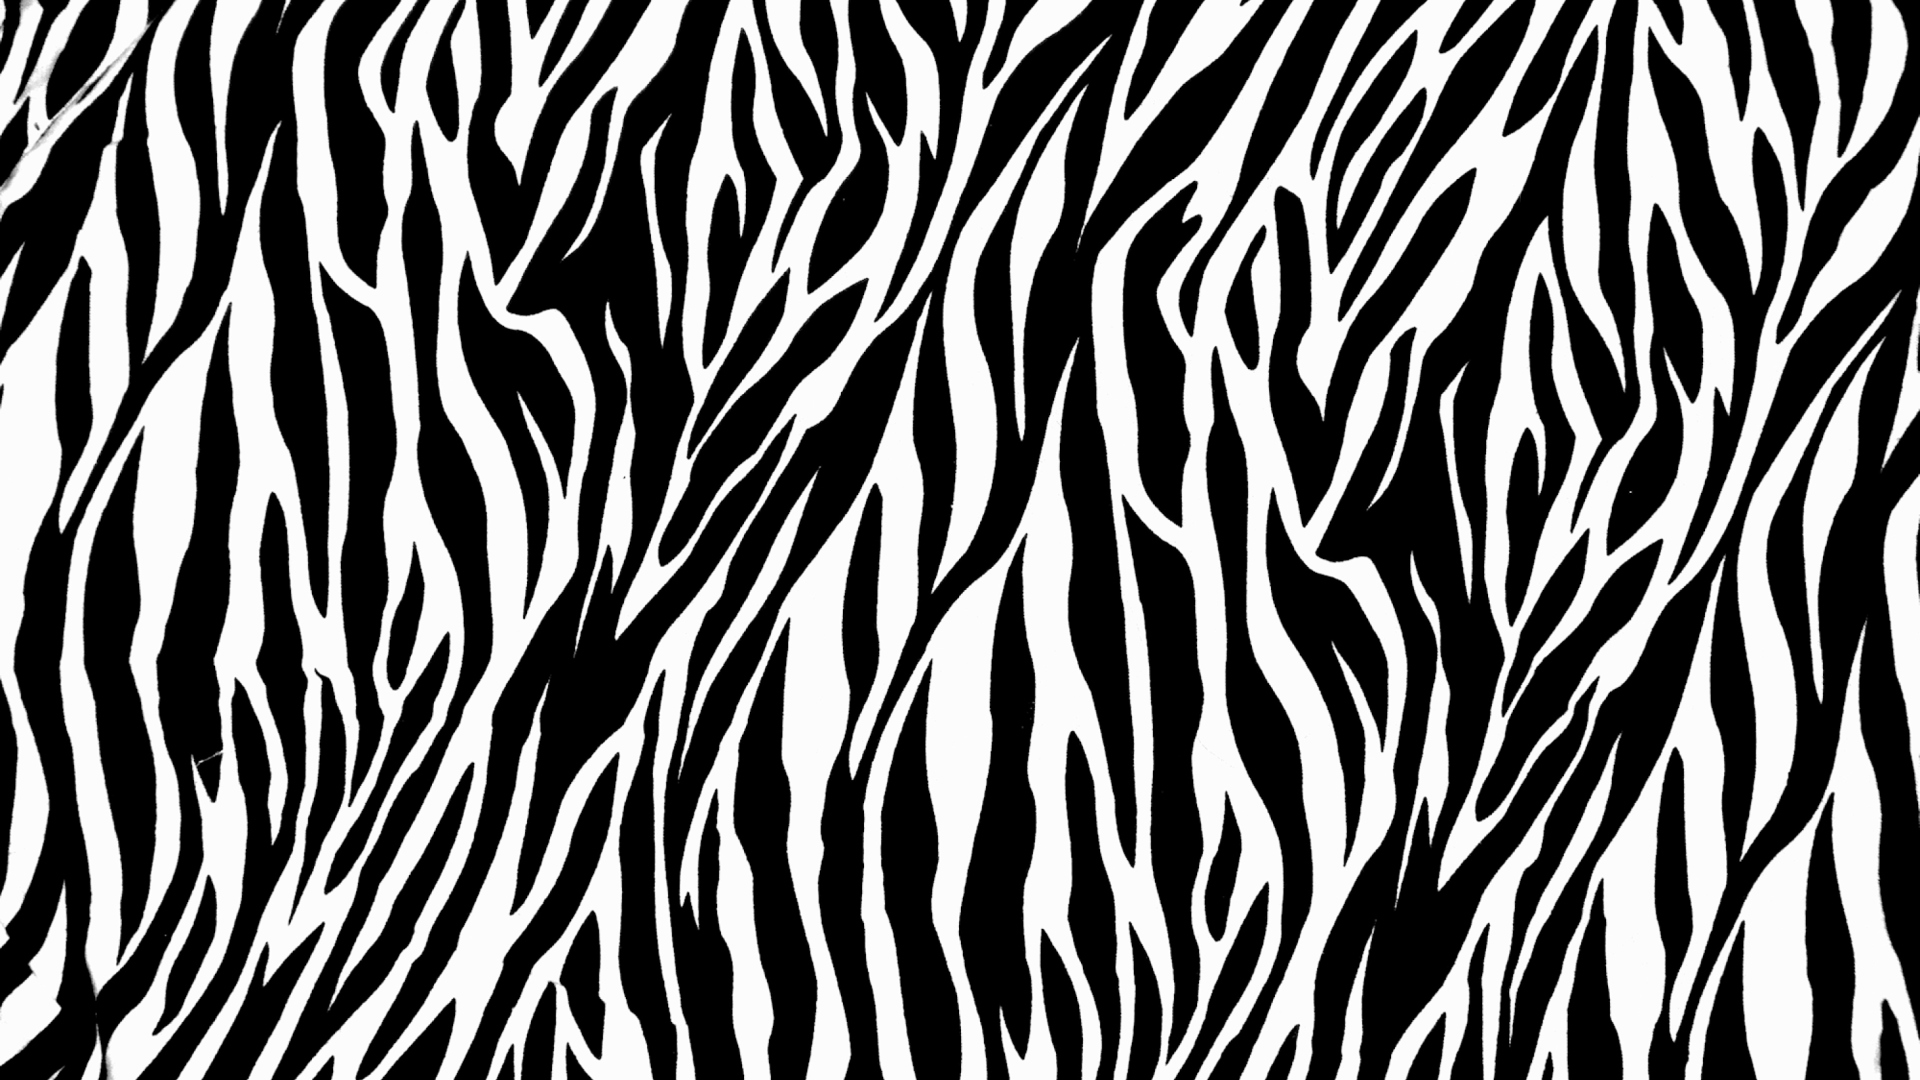 Das Zebra Print Wallpaper 1920x1080